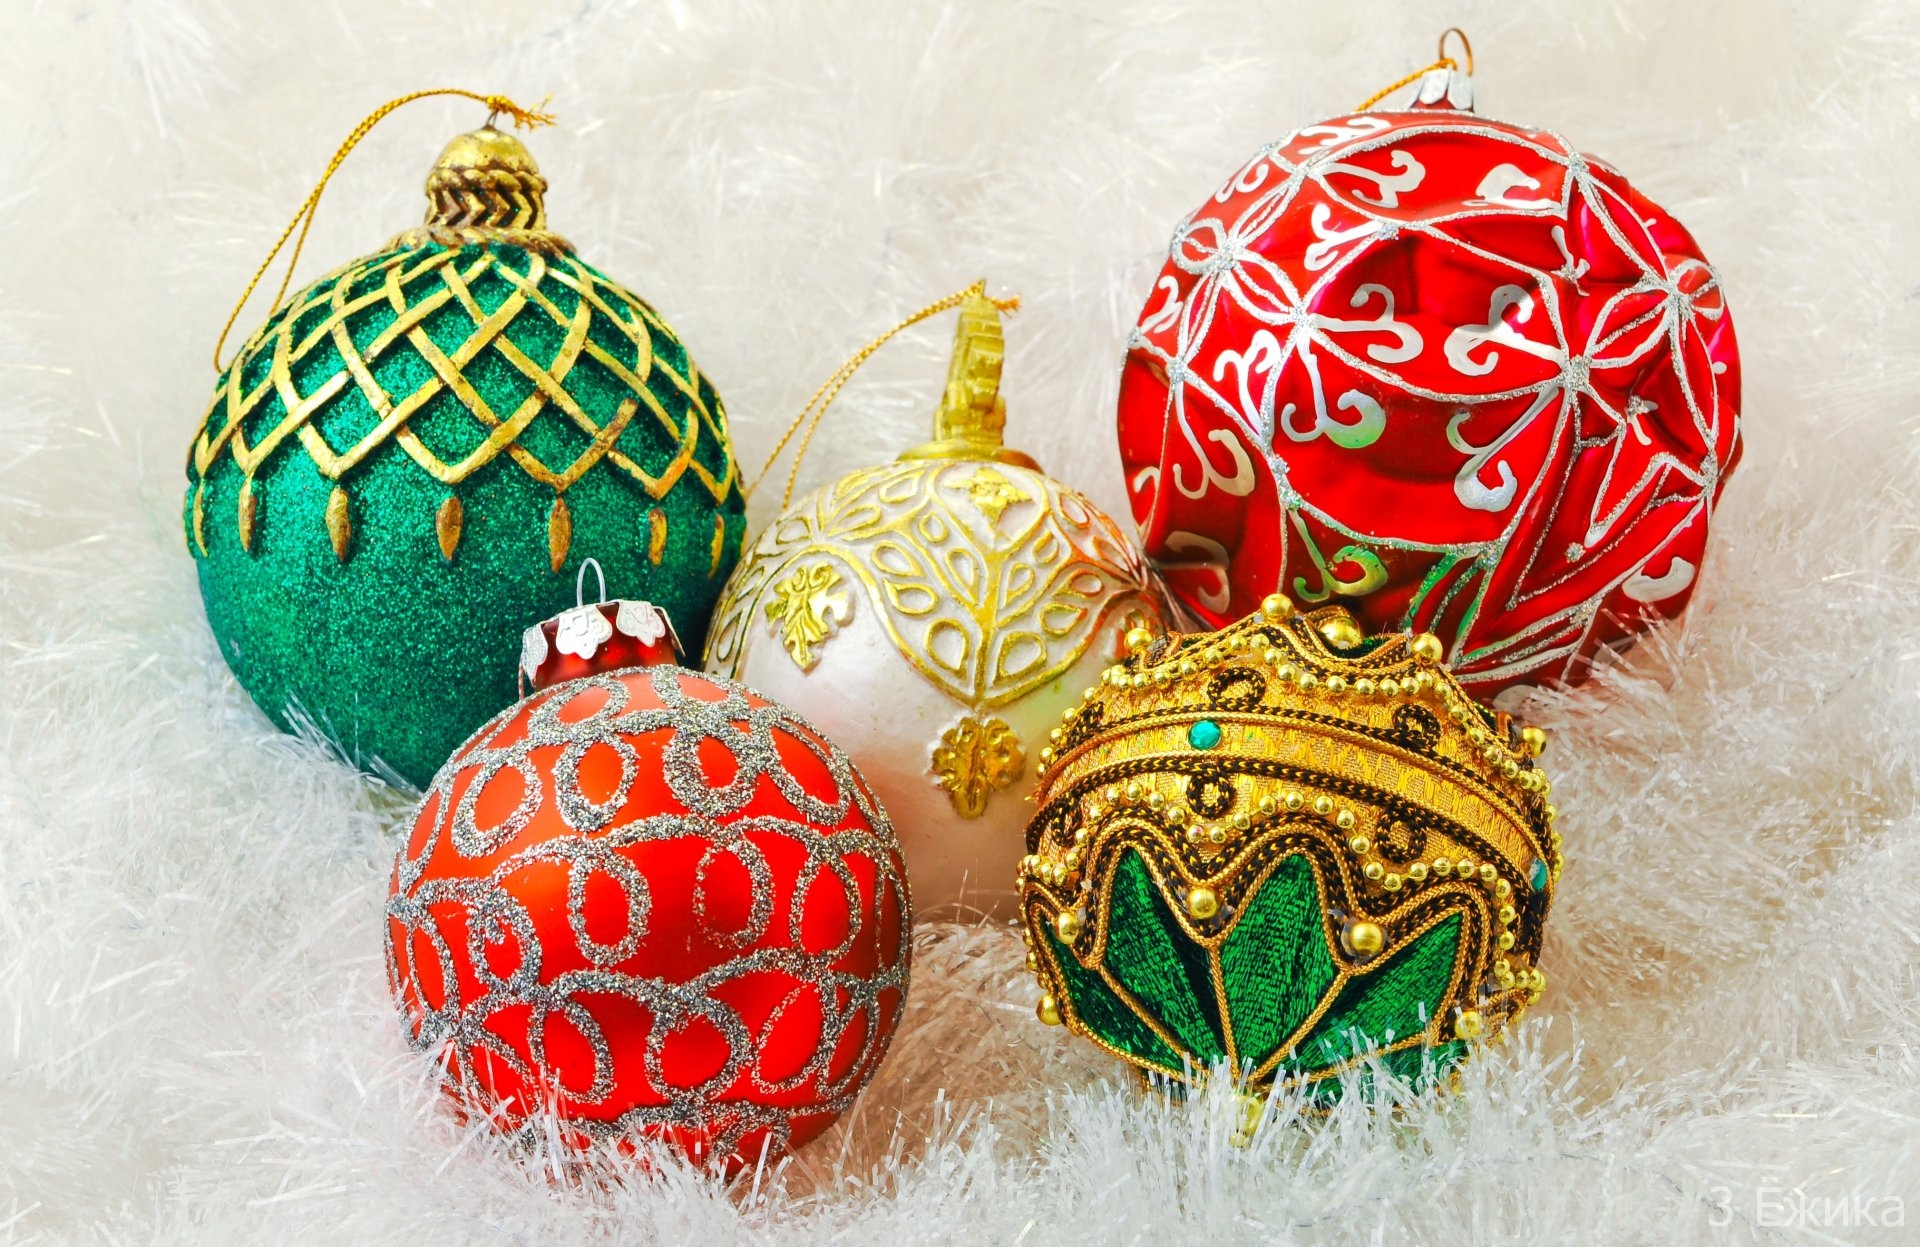 shary-krasnye-belye-zolotye-zelenye-igrushki-ukrasheniya-elochnye-dekoracii-prazdnik-novyj-god-new-year-christmas-rozhdestvo